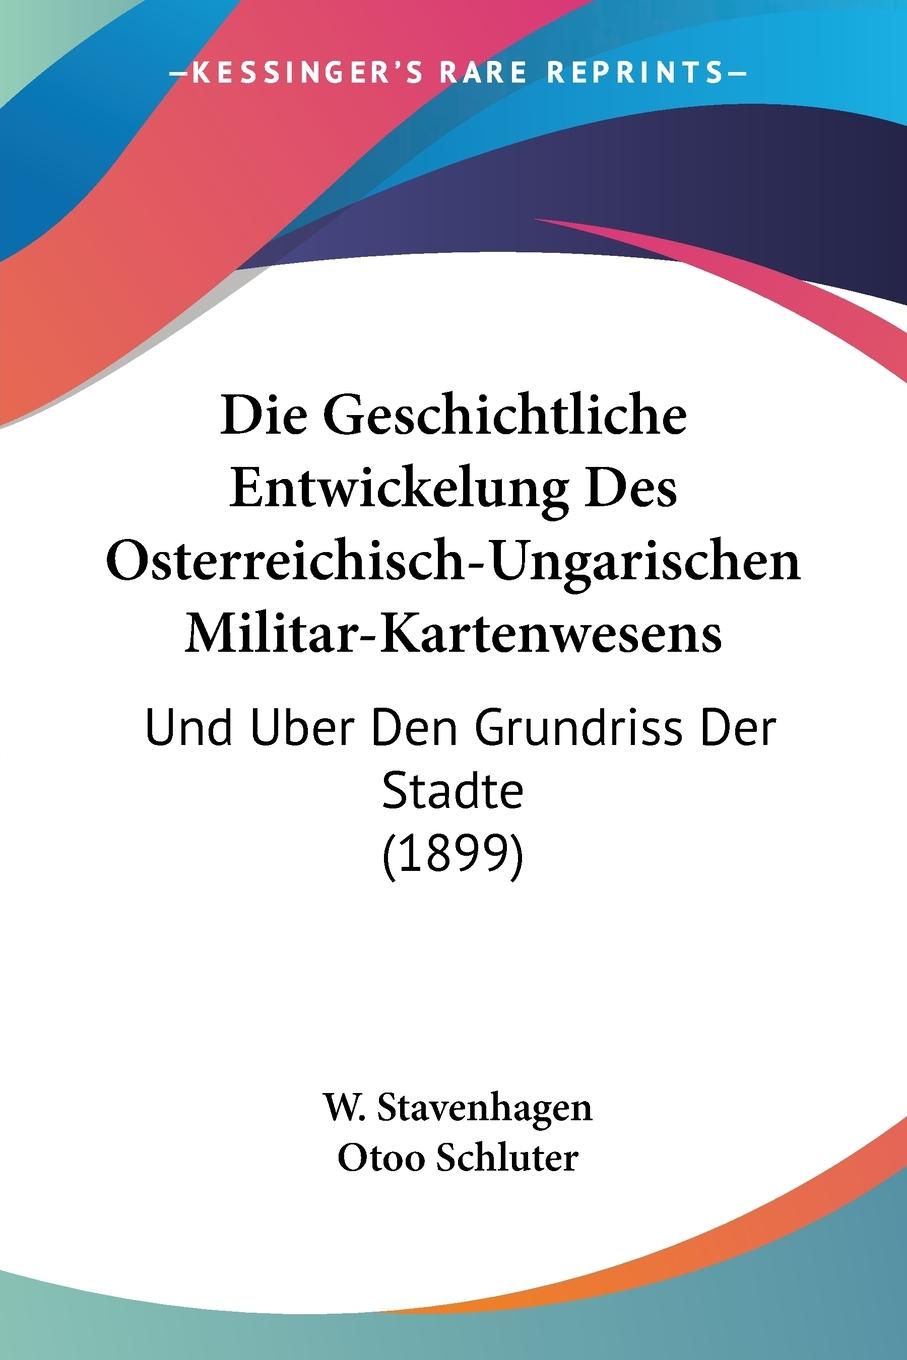 Die Geschichtliche Entwickelung Des Osterreichisch-Ungarischen Militar-Kartenwesens - Stavenhagen, W. Schluter, Otoo